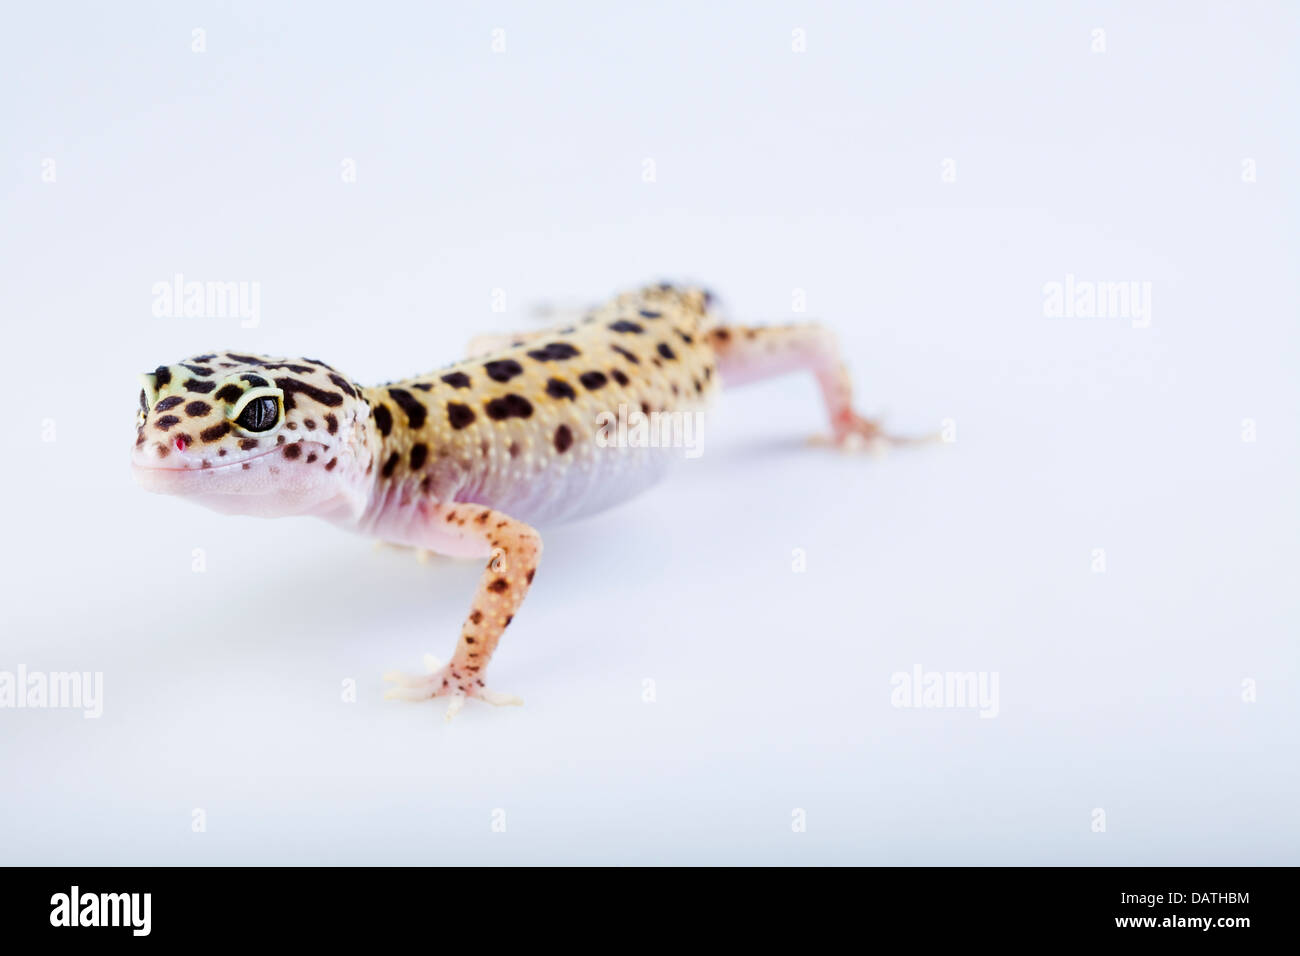 Piccolo rettile gecko lizard Foto Stock